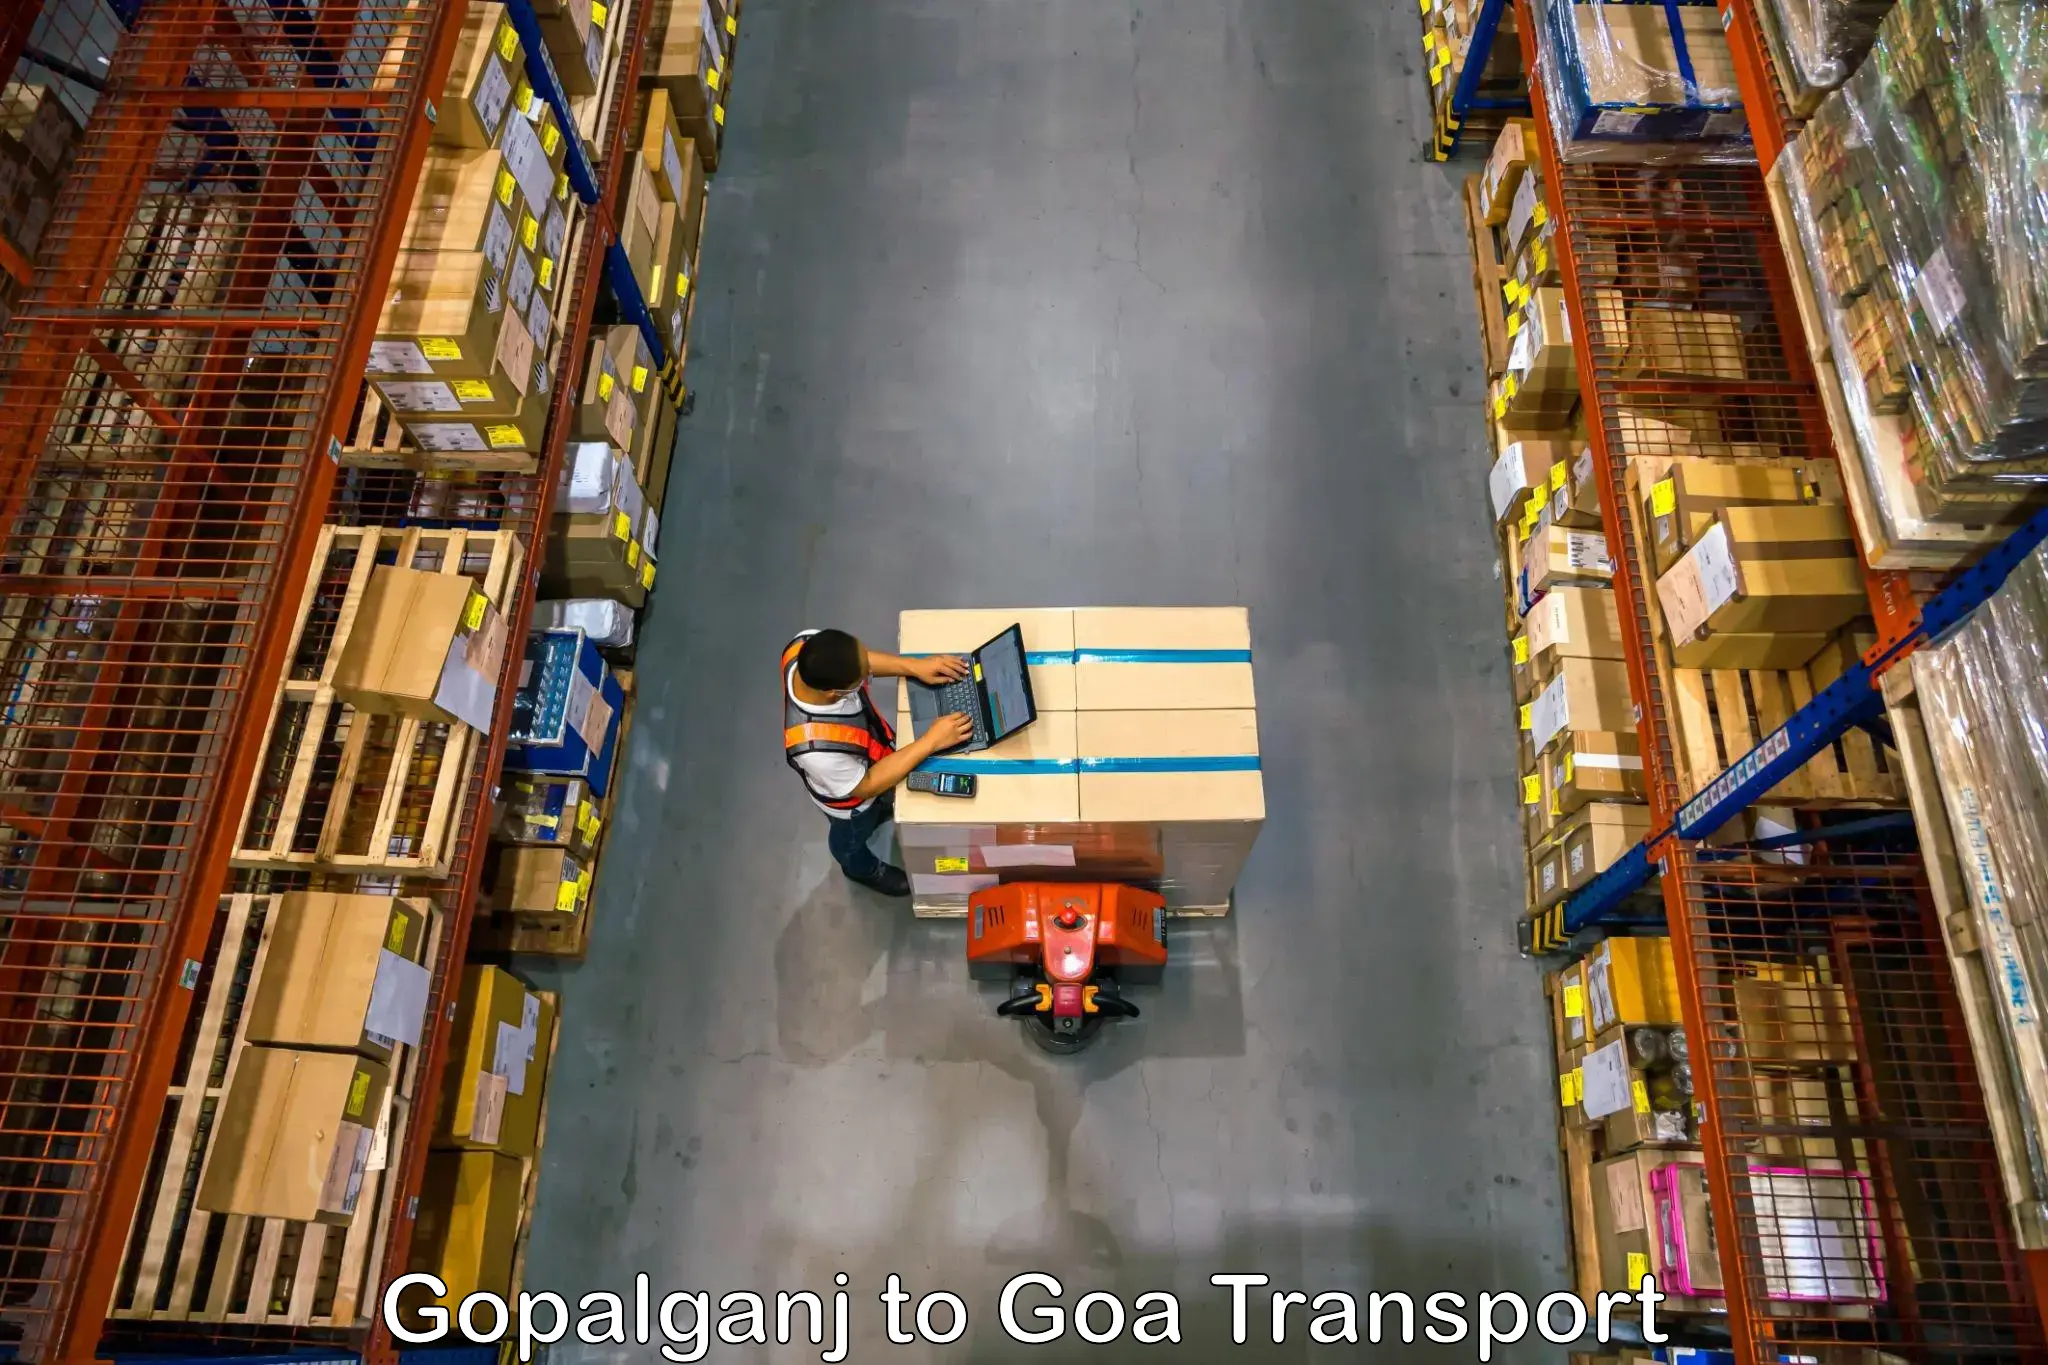 Container transport service Gopalganj to Mormugao Port